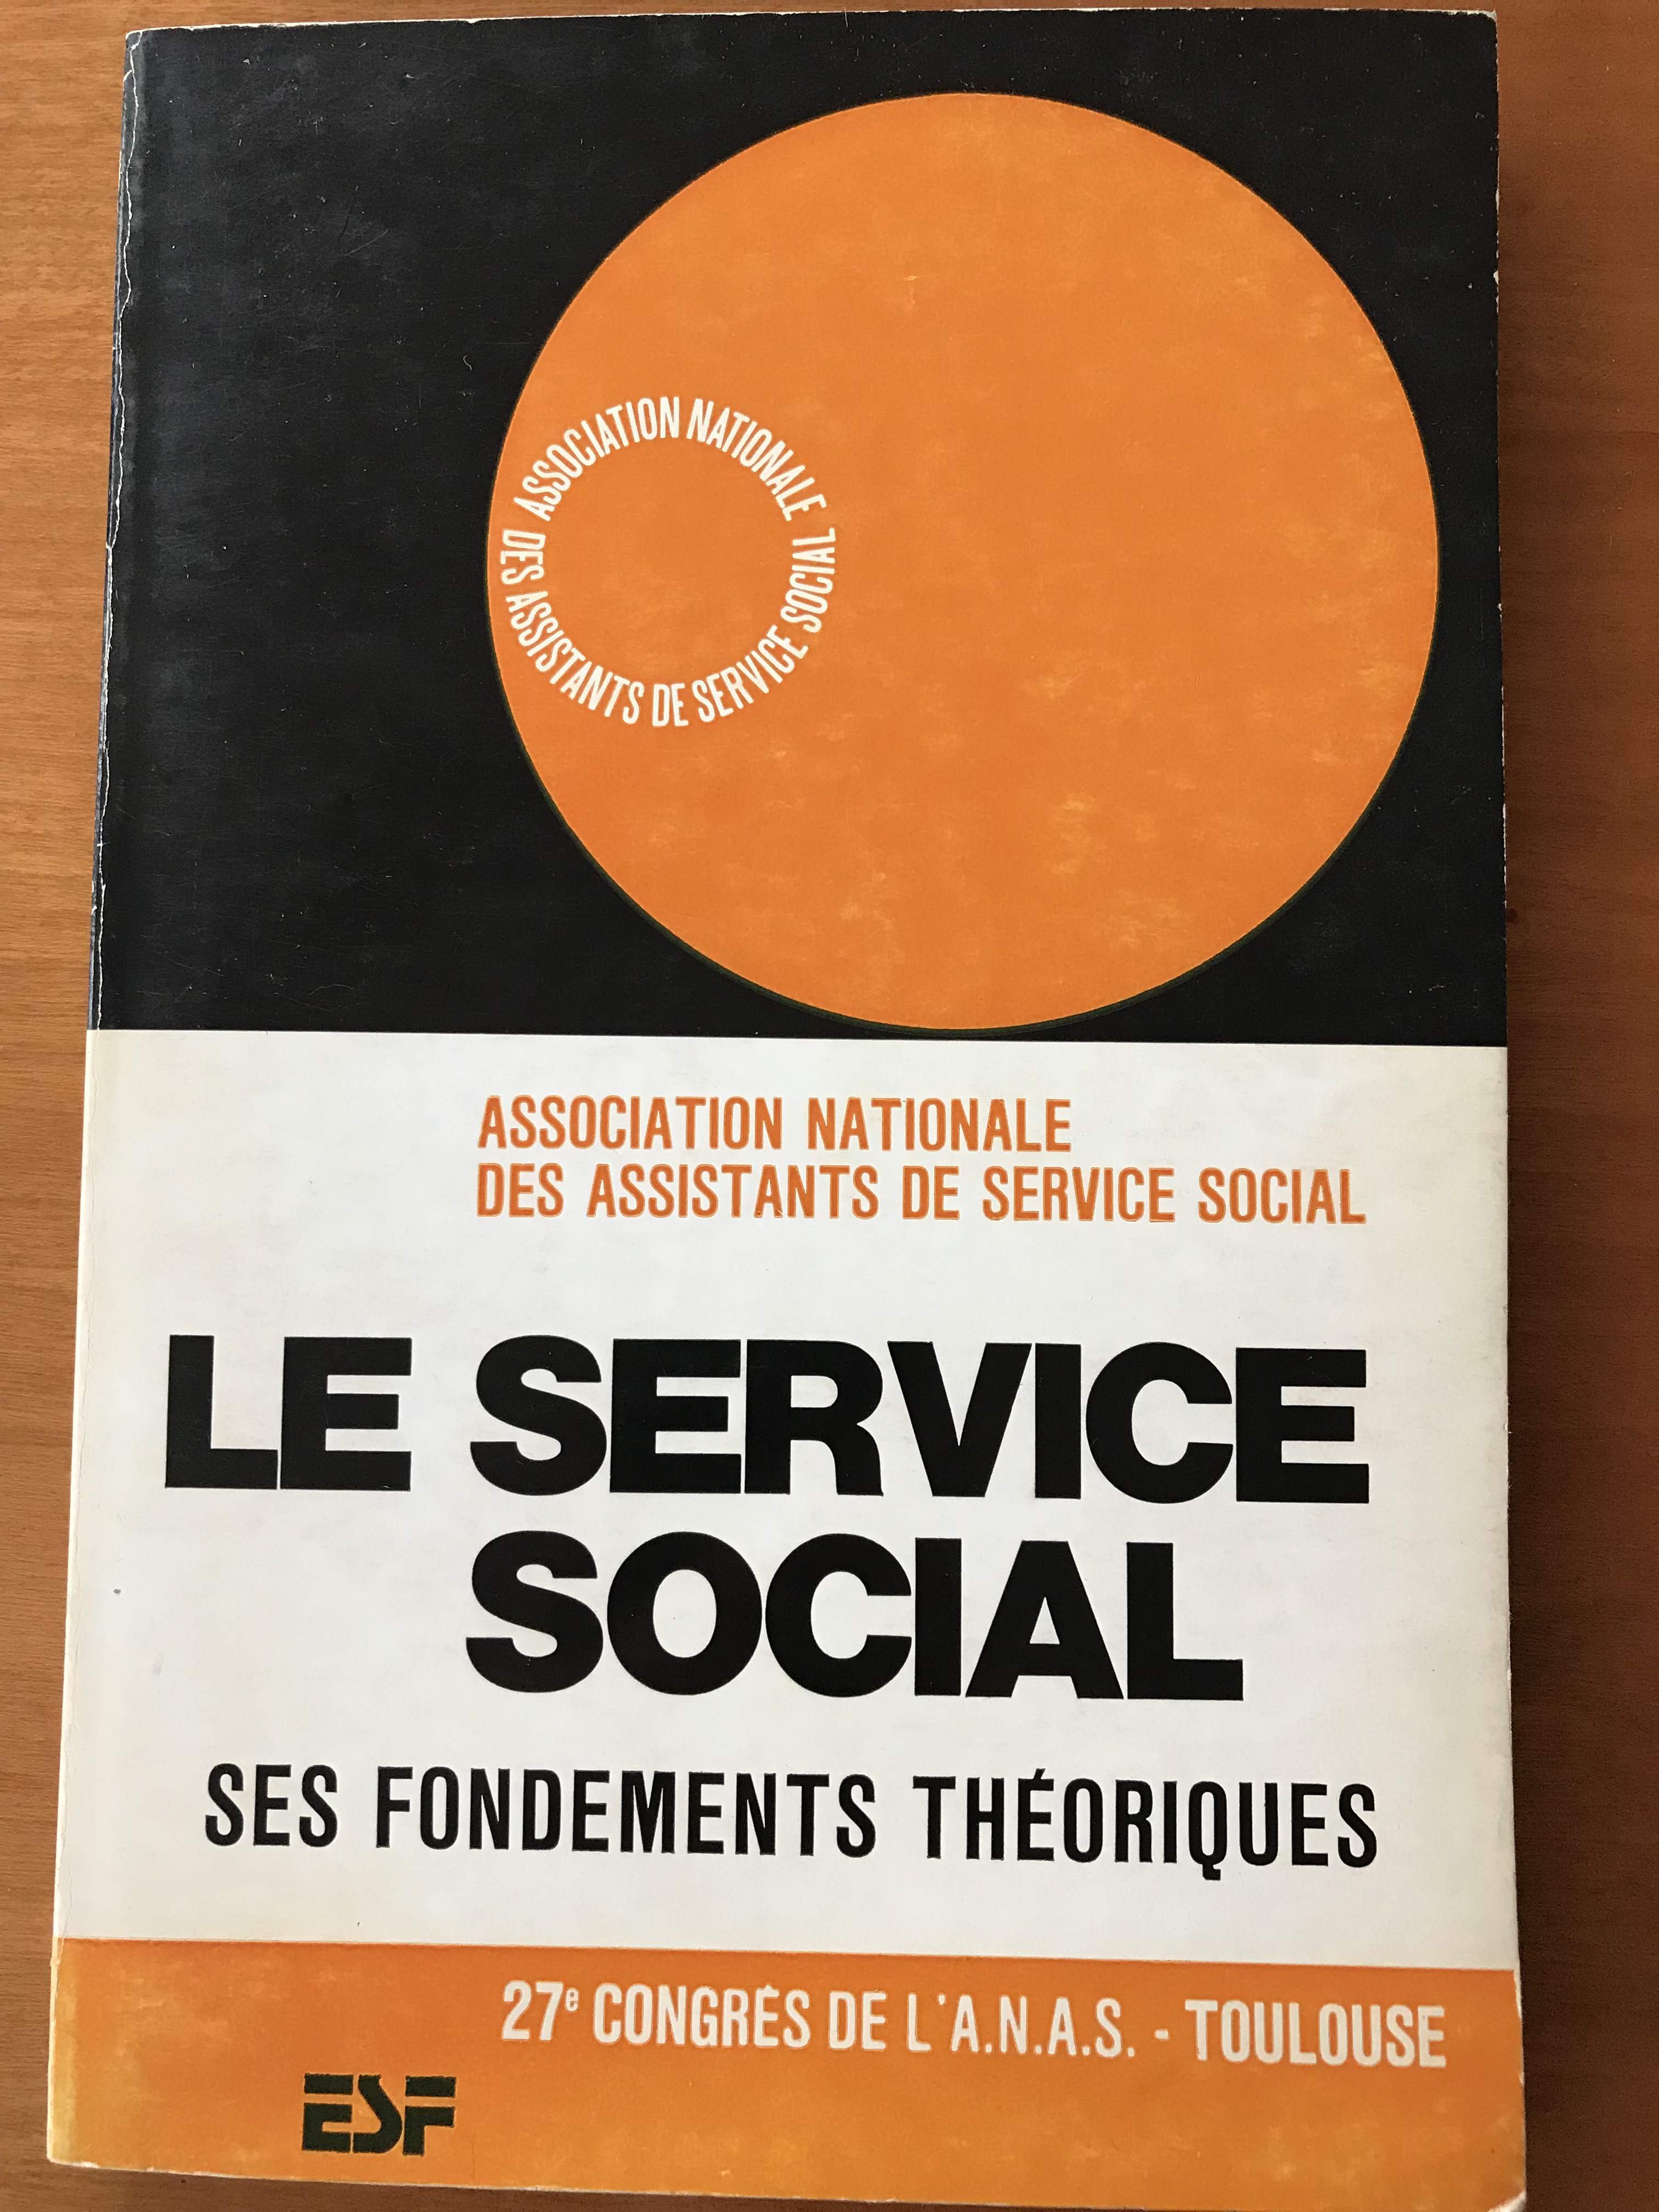 Le service social – ses fondements théoriques